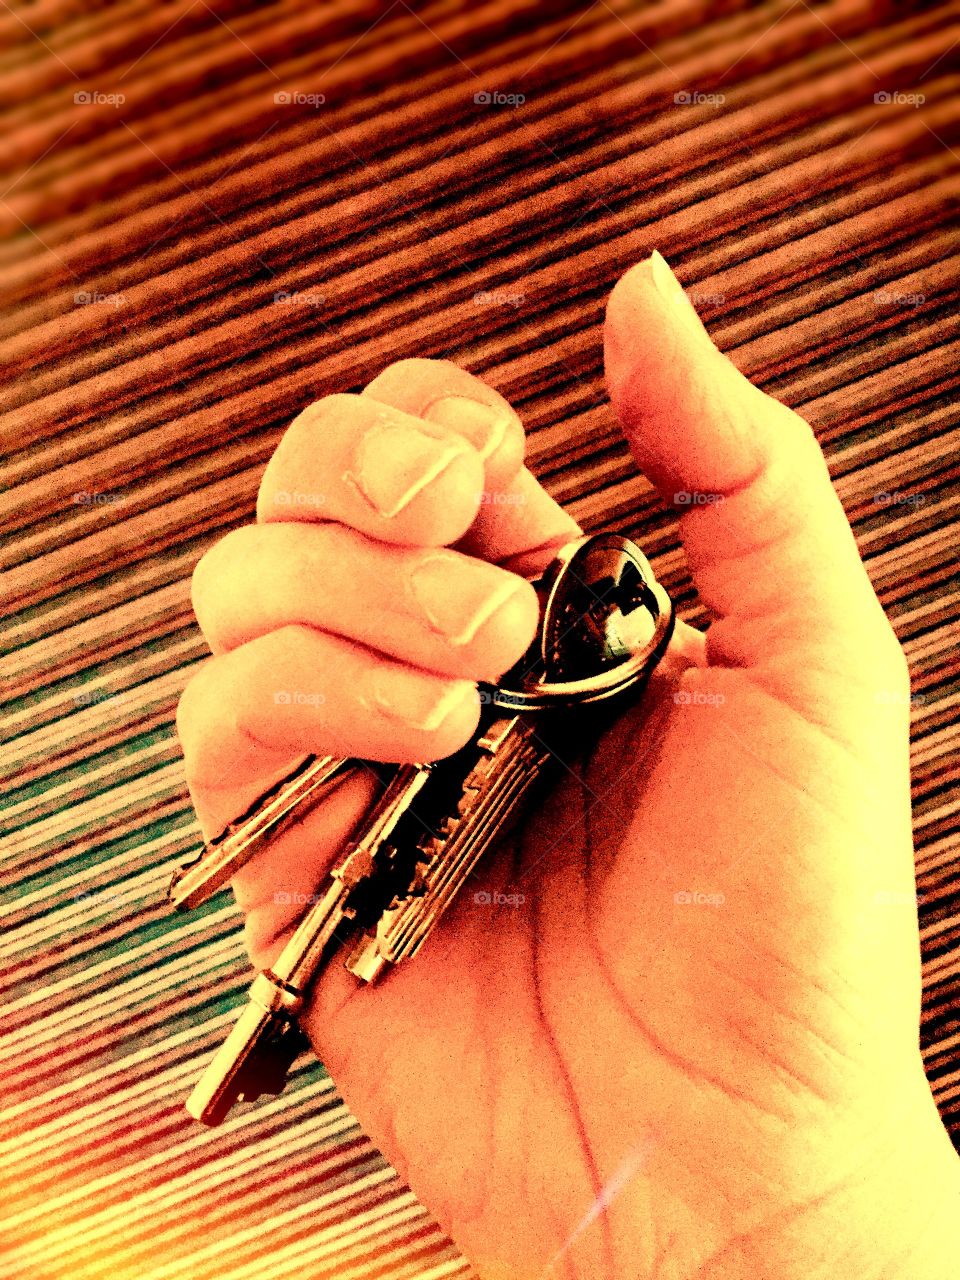 Keys in hand